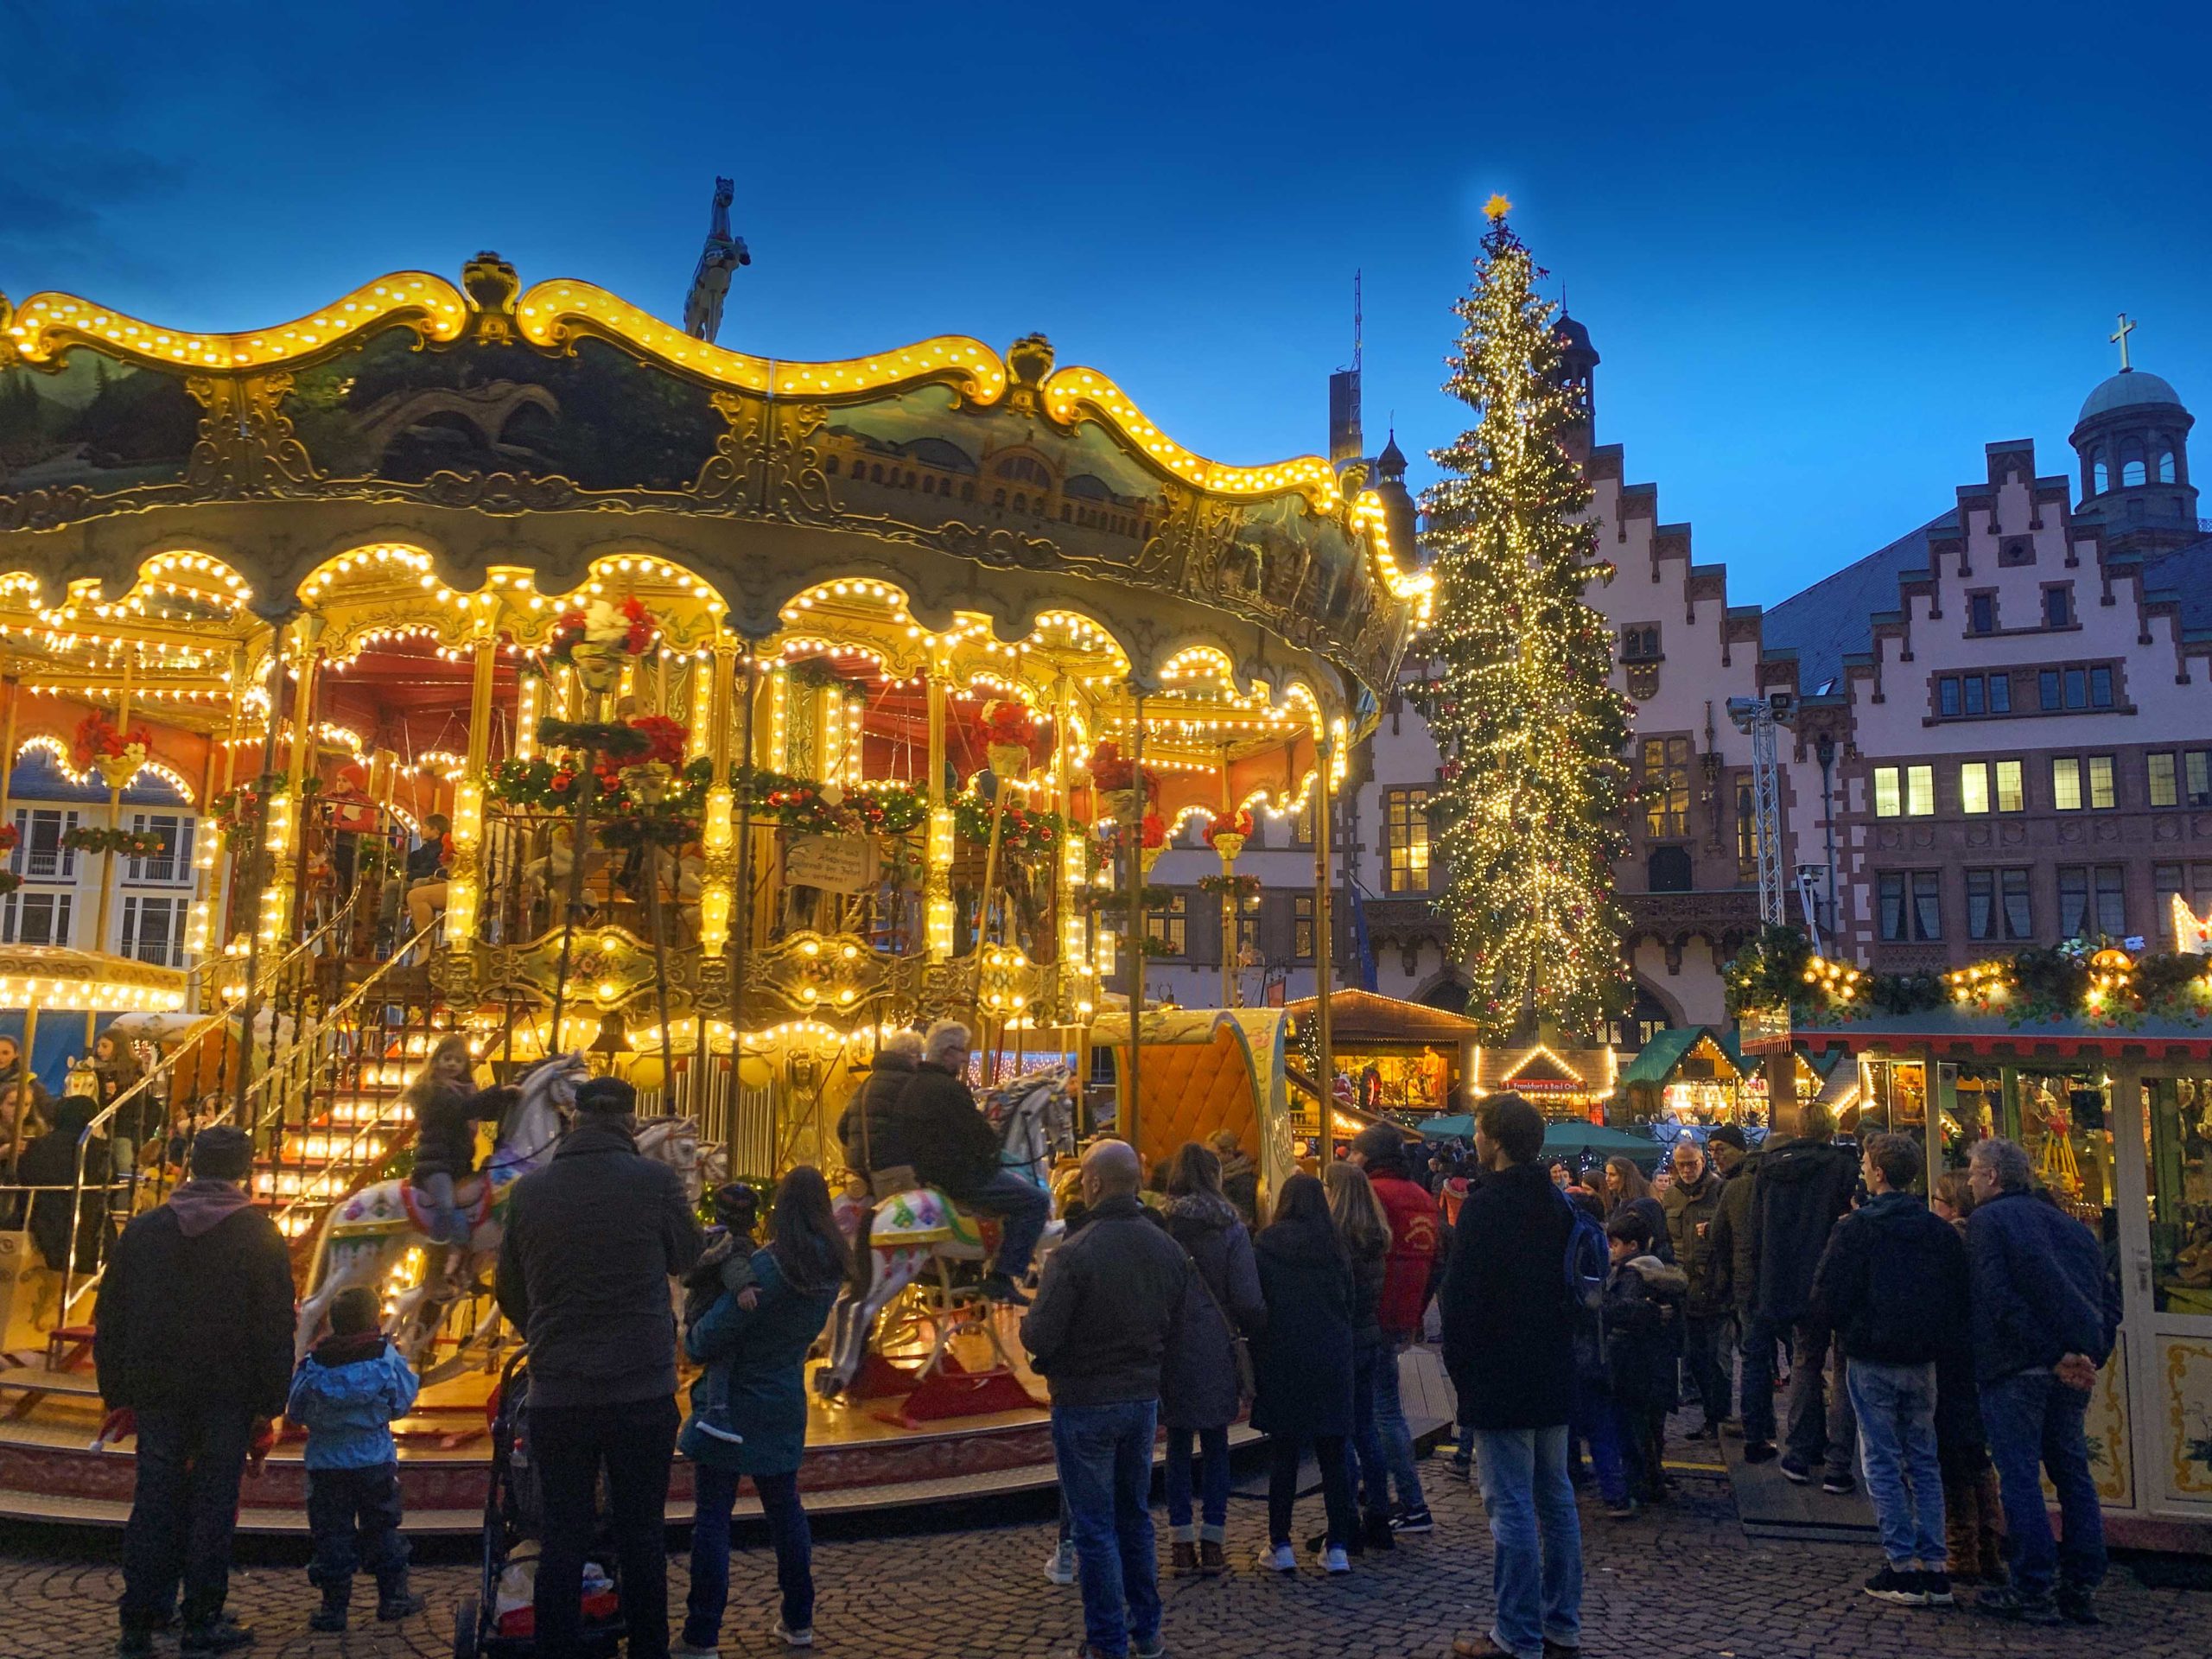 Le marché de Noël de Francfort en Allemagne. Photo : yaya7 via Twenty20